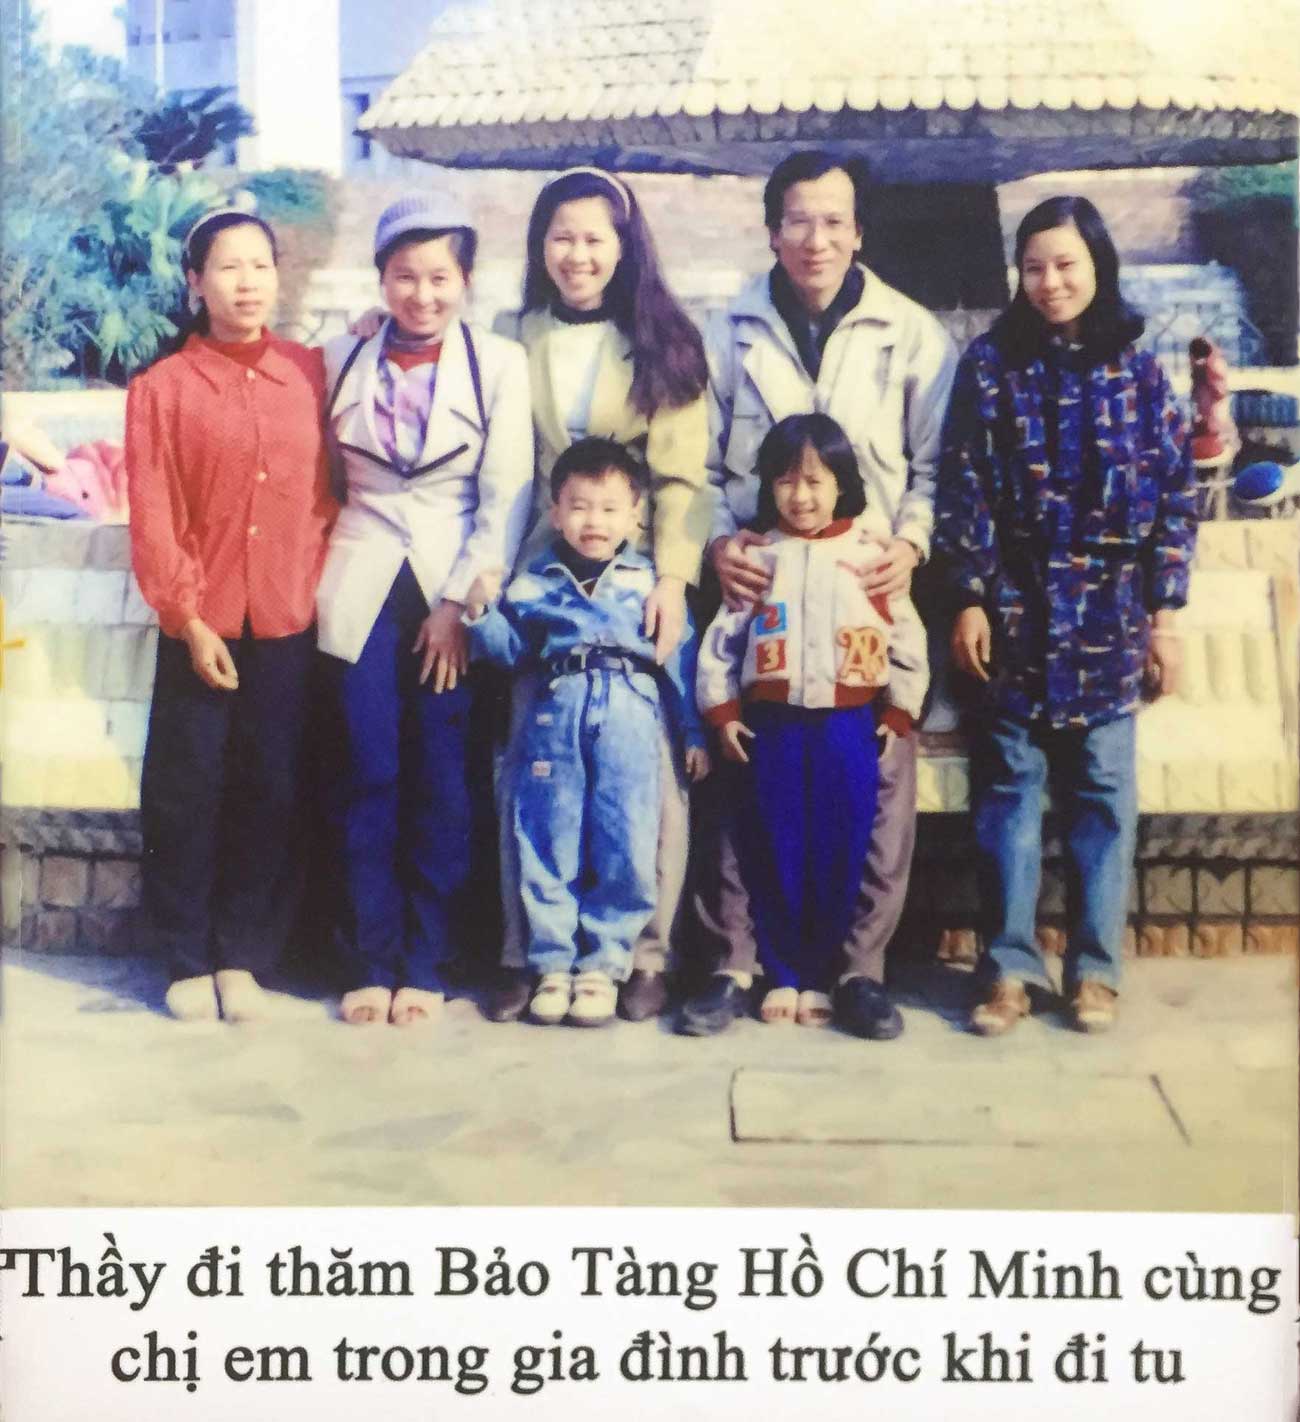 Chị em trong gia đình cùng Thầy Thích Trúc Thái Minh đi thăm Bảo Tàng Hồ Chí Minh trước khi Thầy đi tu